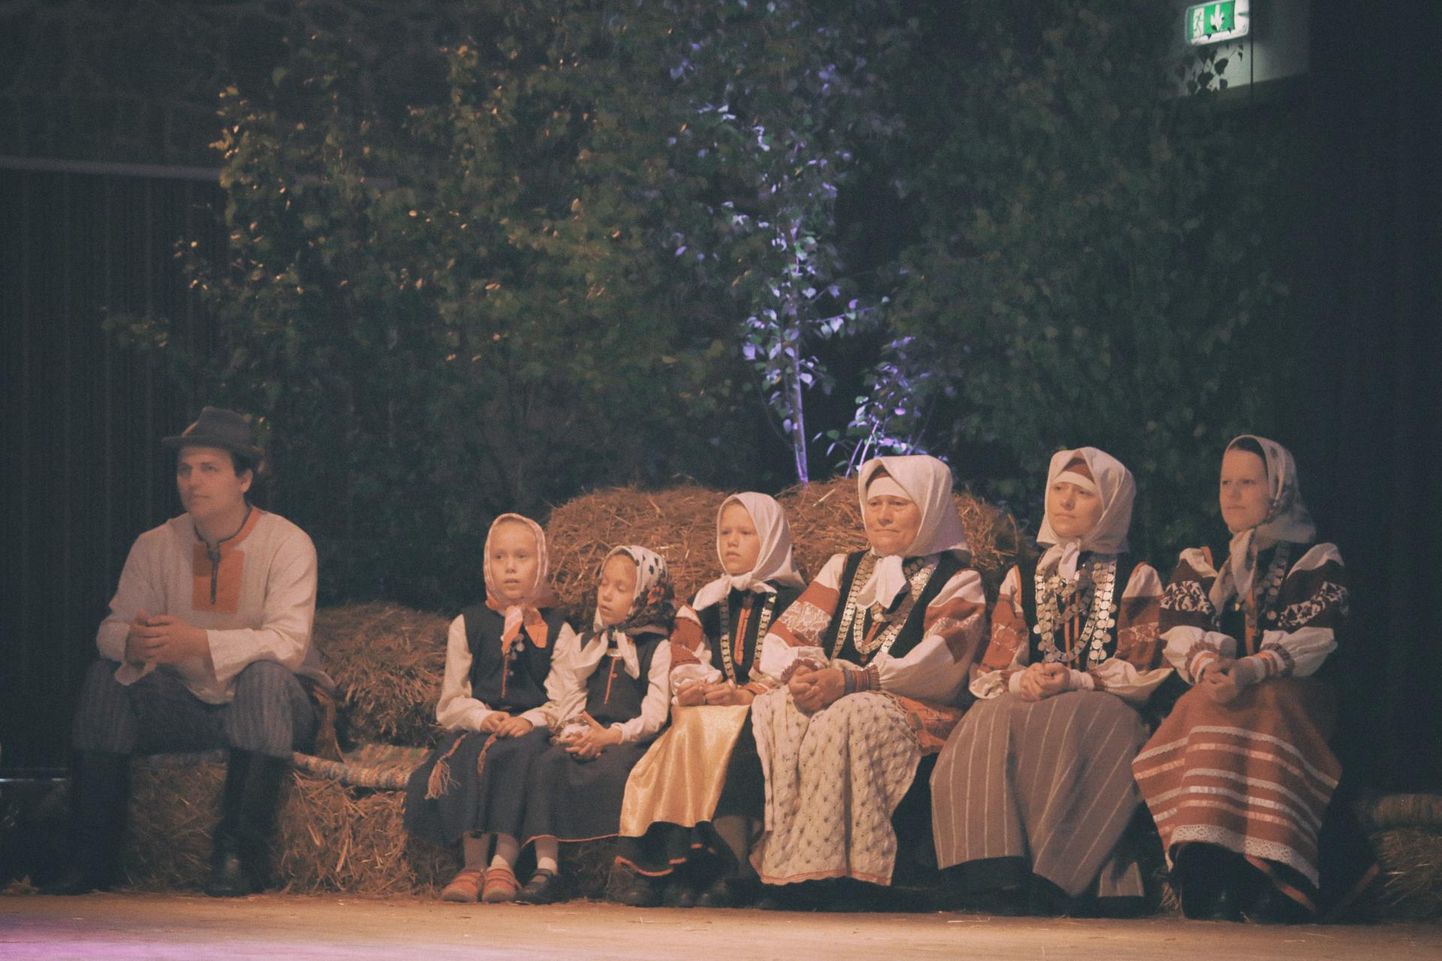 Setod esinemas eelmisel Eestis toimunud Baltica festivalil 2016. aastal Moostes. FOTO: Aivo Põlluäär